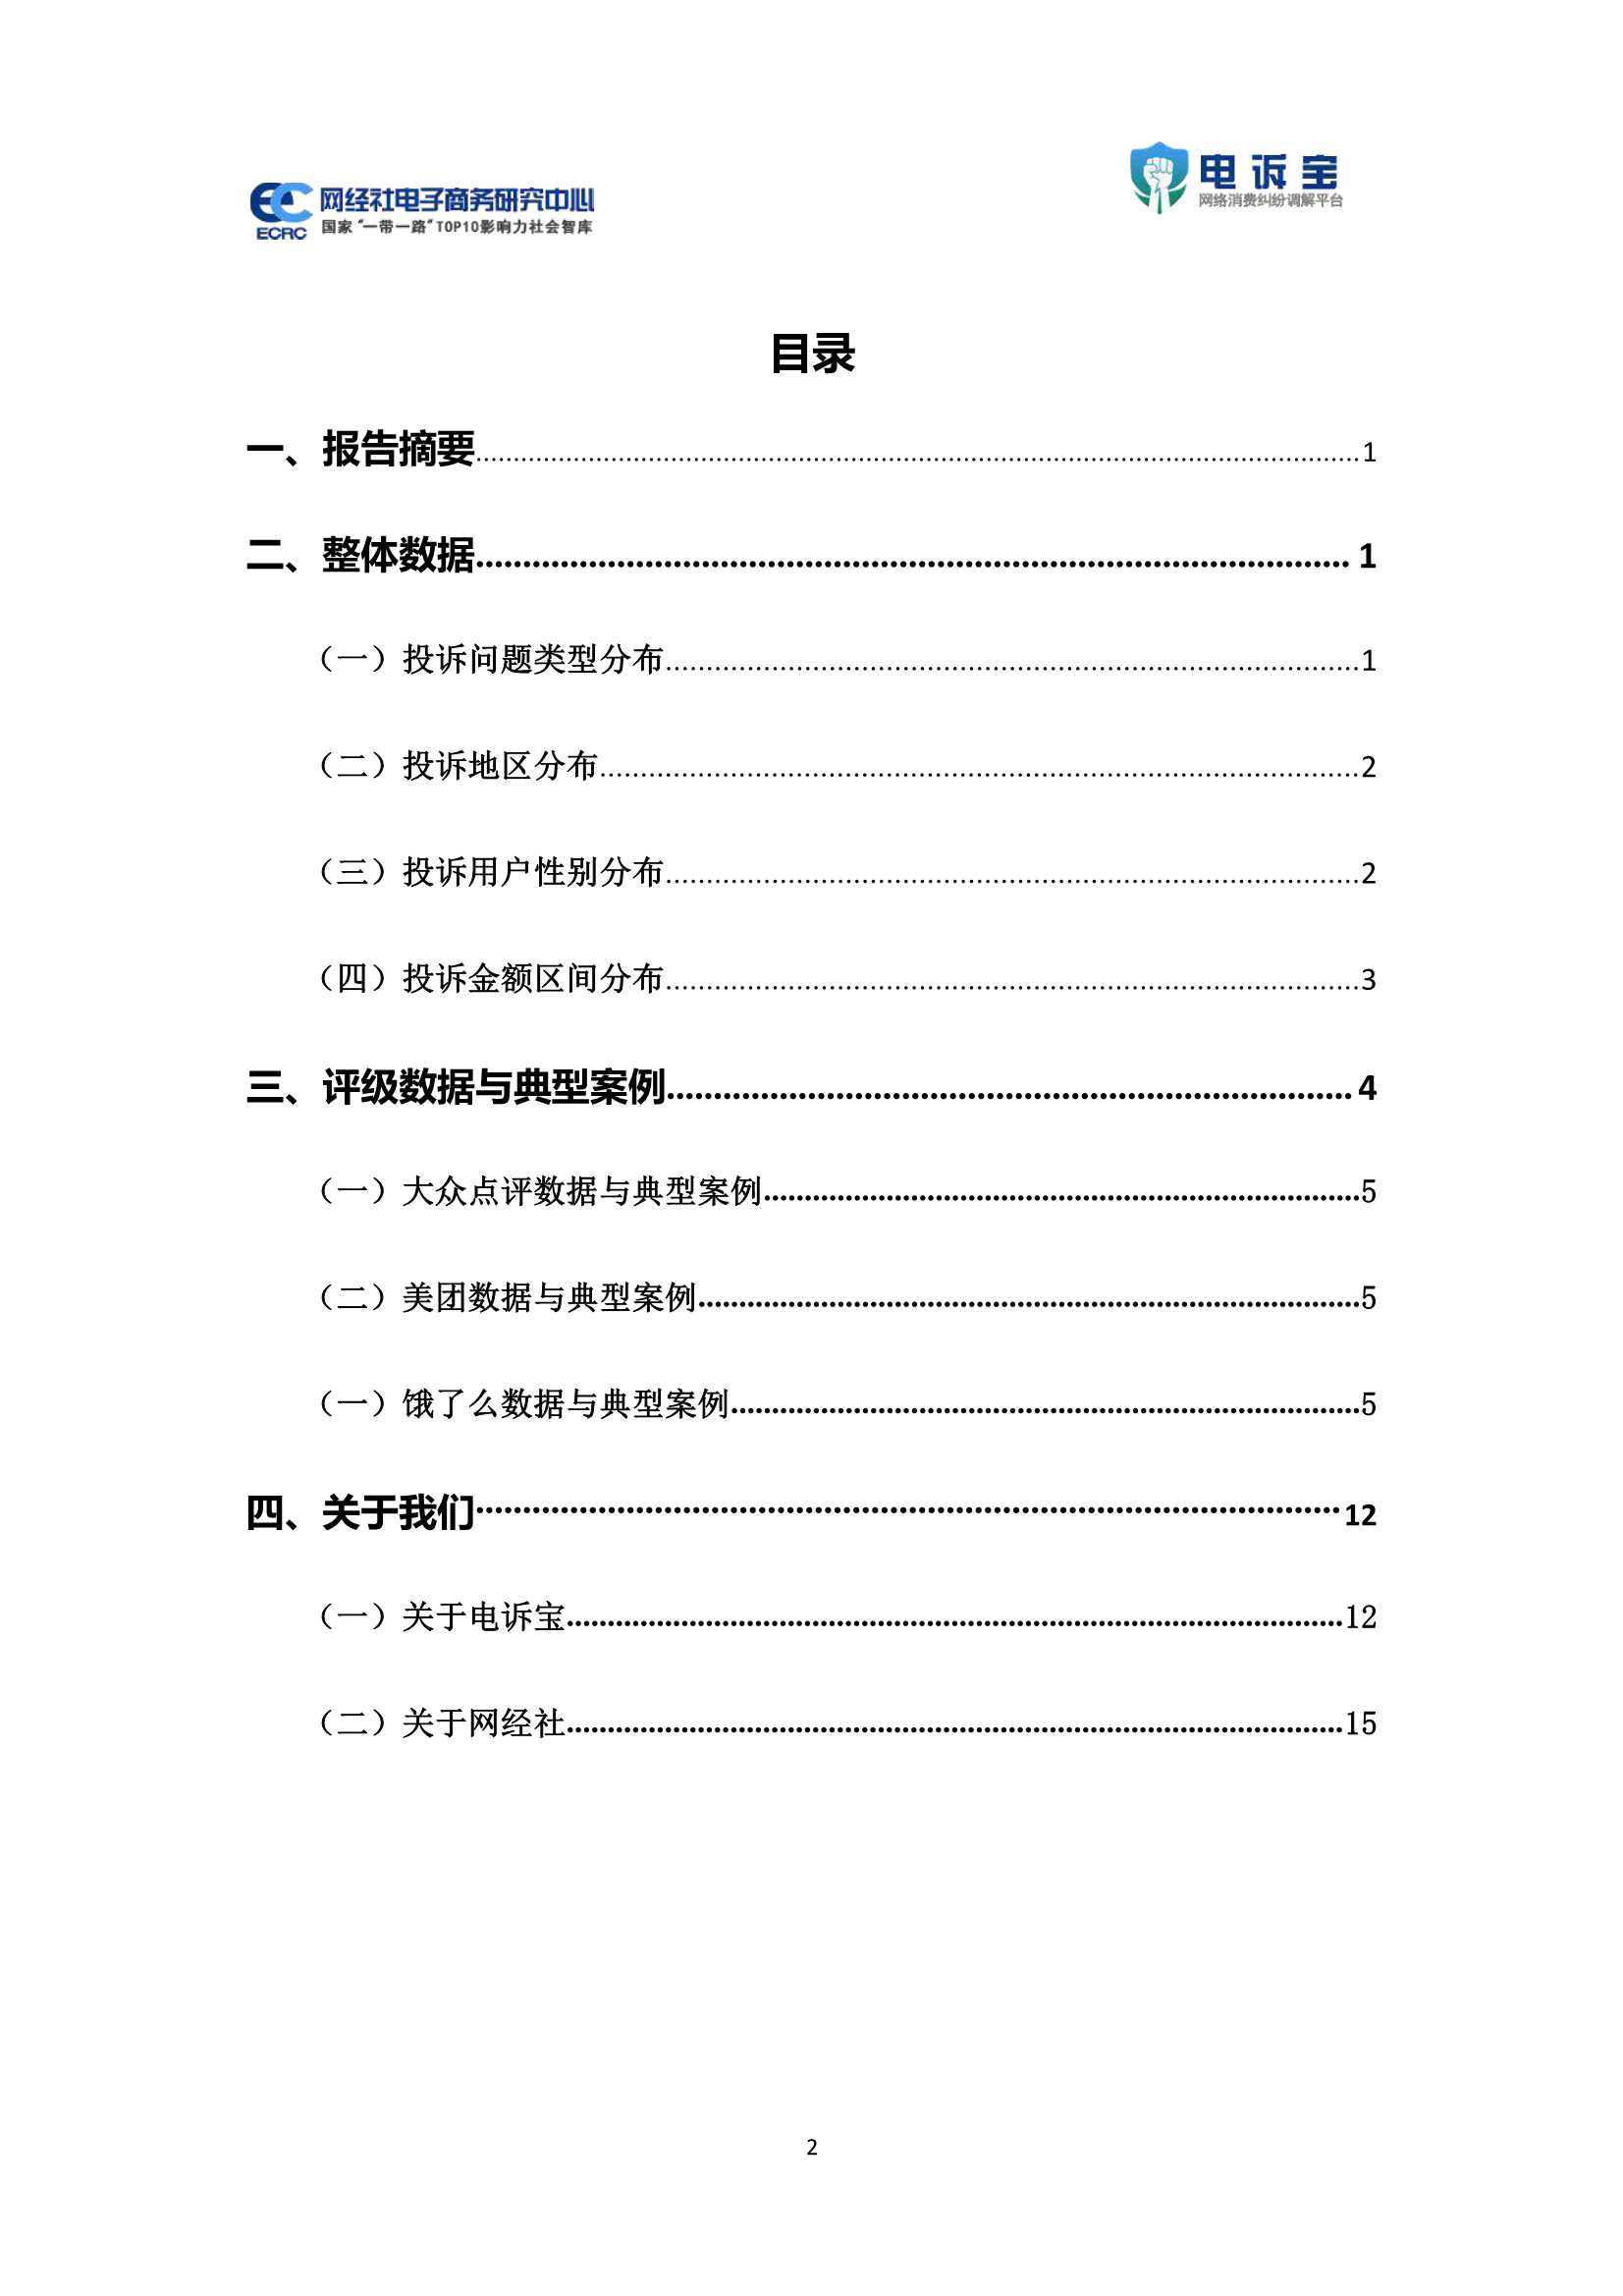 2021年中国在线餐饮用户体验与投诉监测报告-2022.01-20页